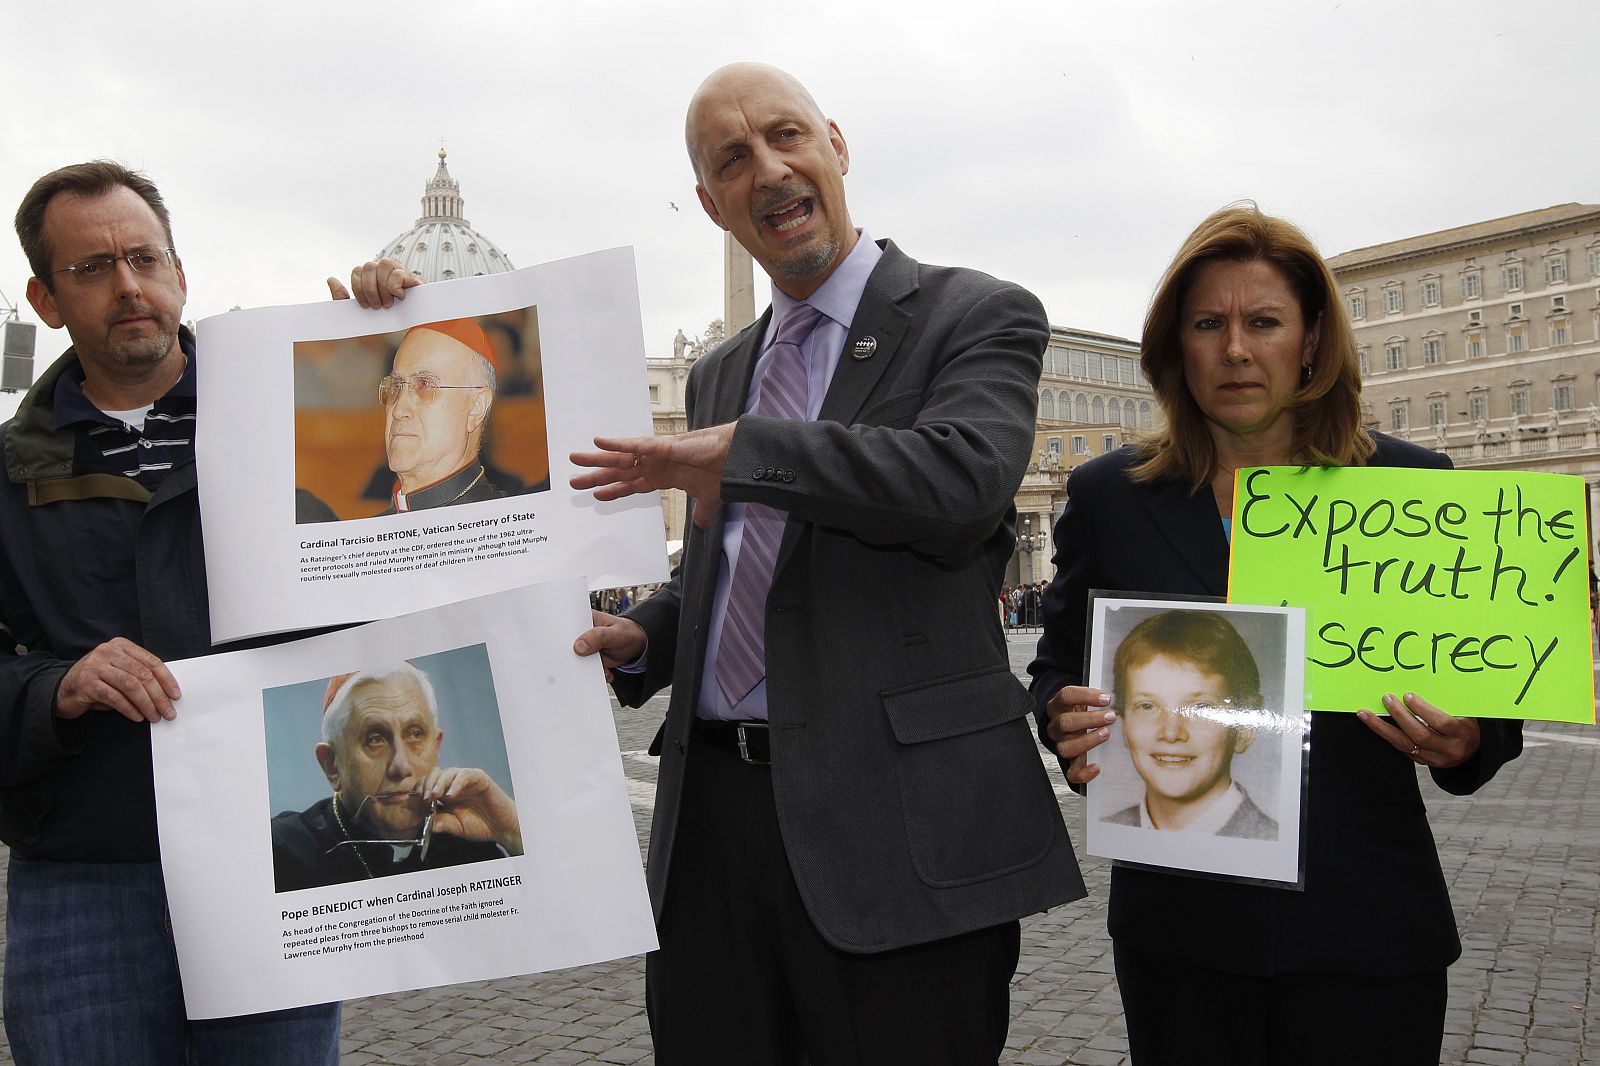 Peter Isely, John Pilmaier y Barbara Blaine, todos estadounidenses, sostienen carteles con la imagen del cardenal Tarcisio Bertone y el Papa Benedicto XVI, en una protesta contra el abuso sexual en la plaza de San Pedro en el Vaticano.